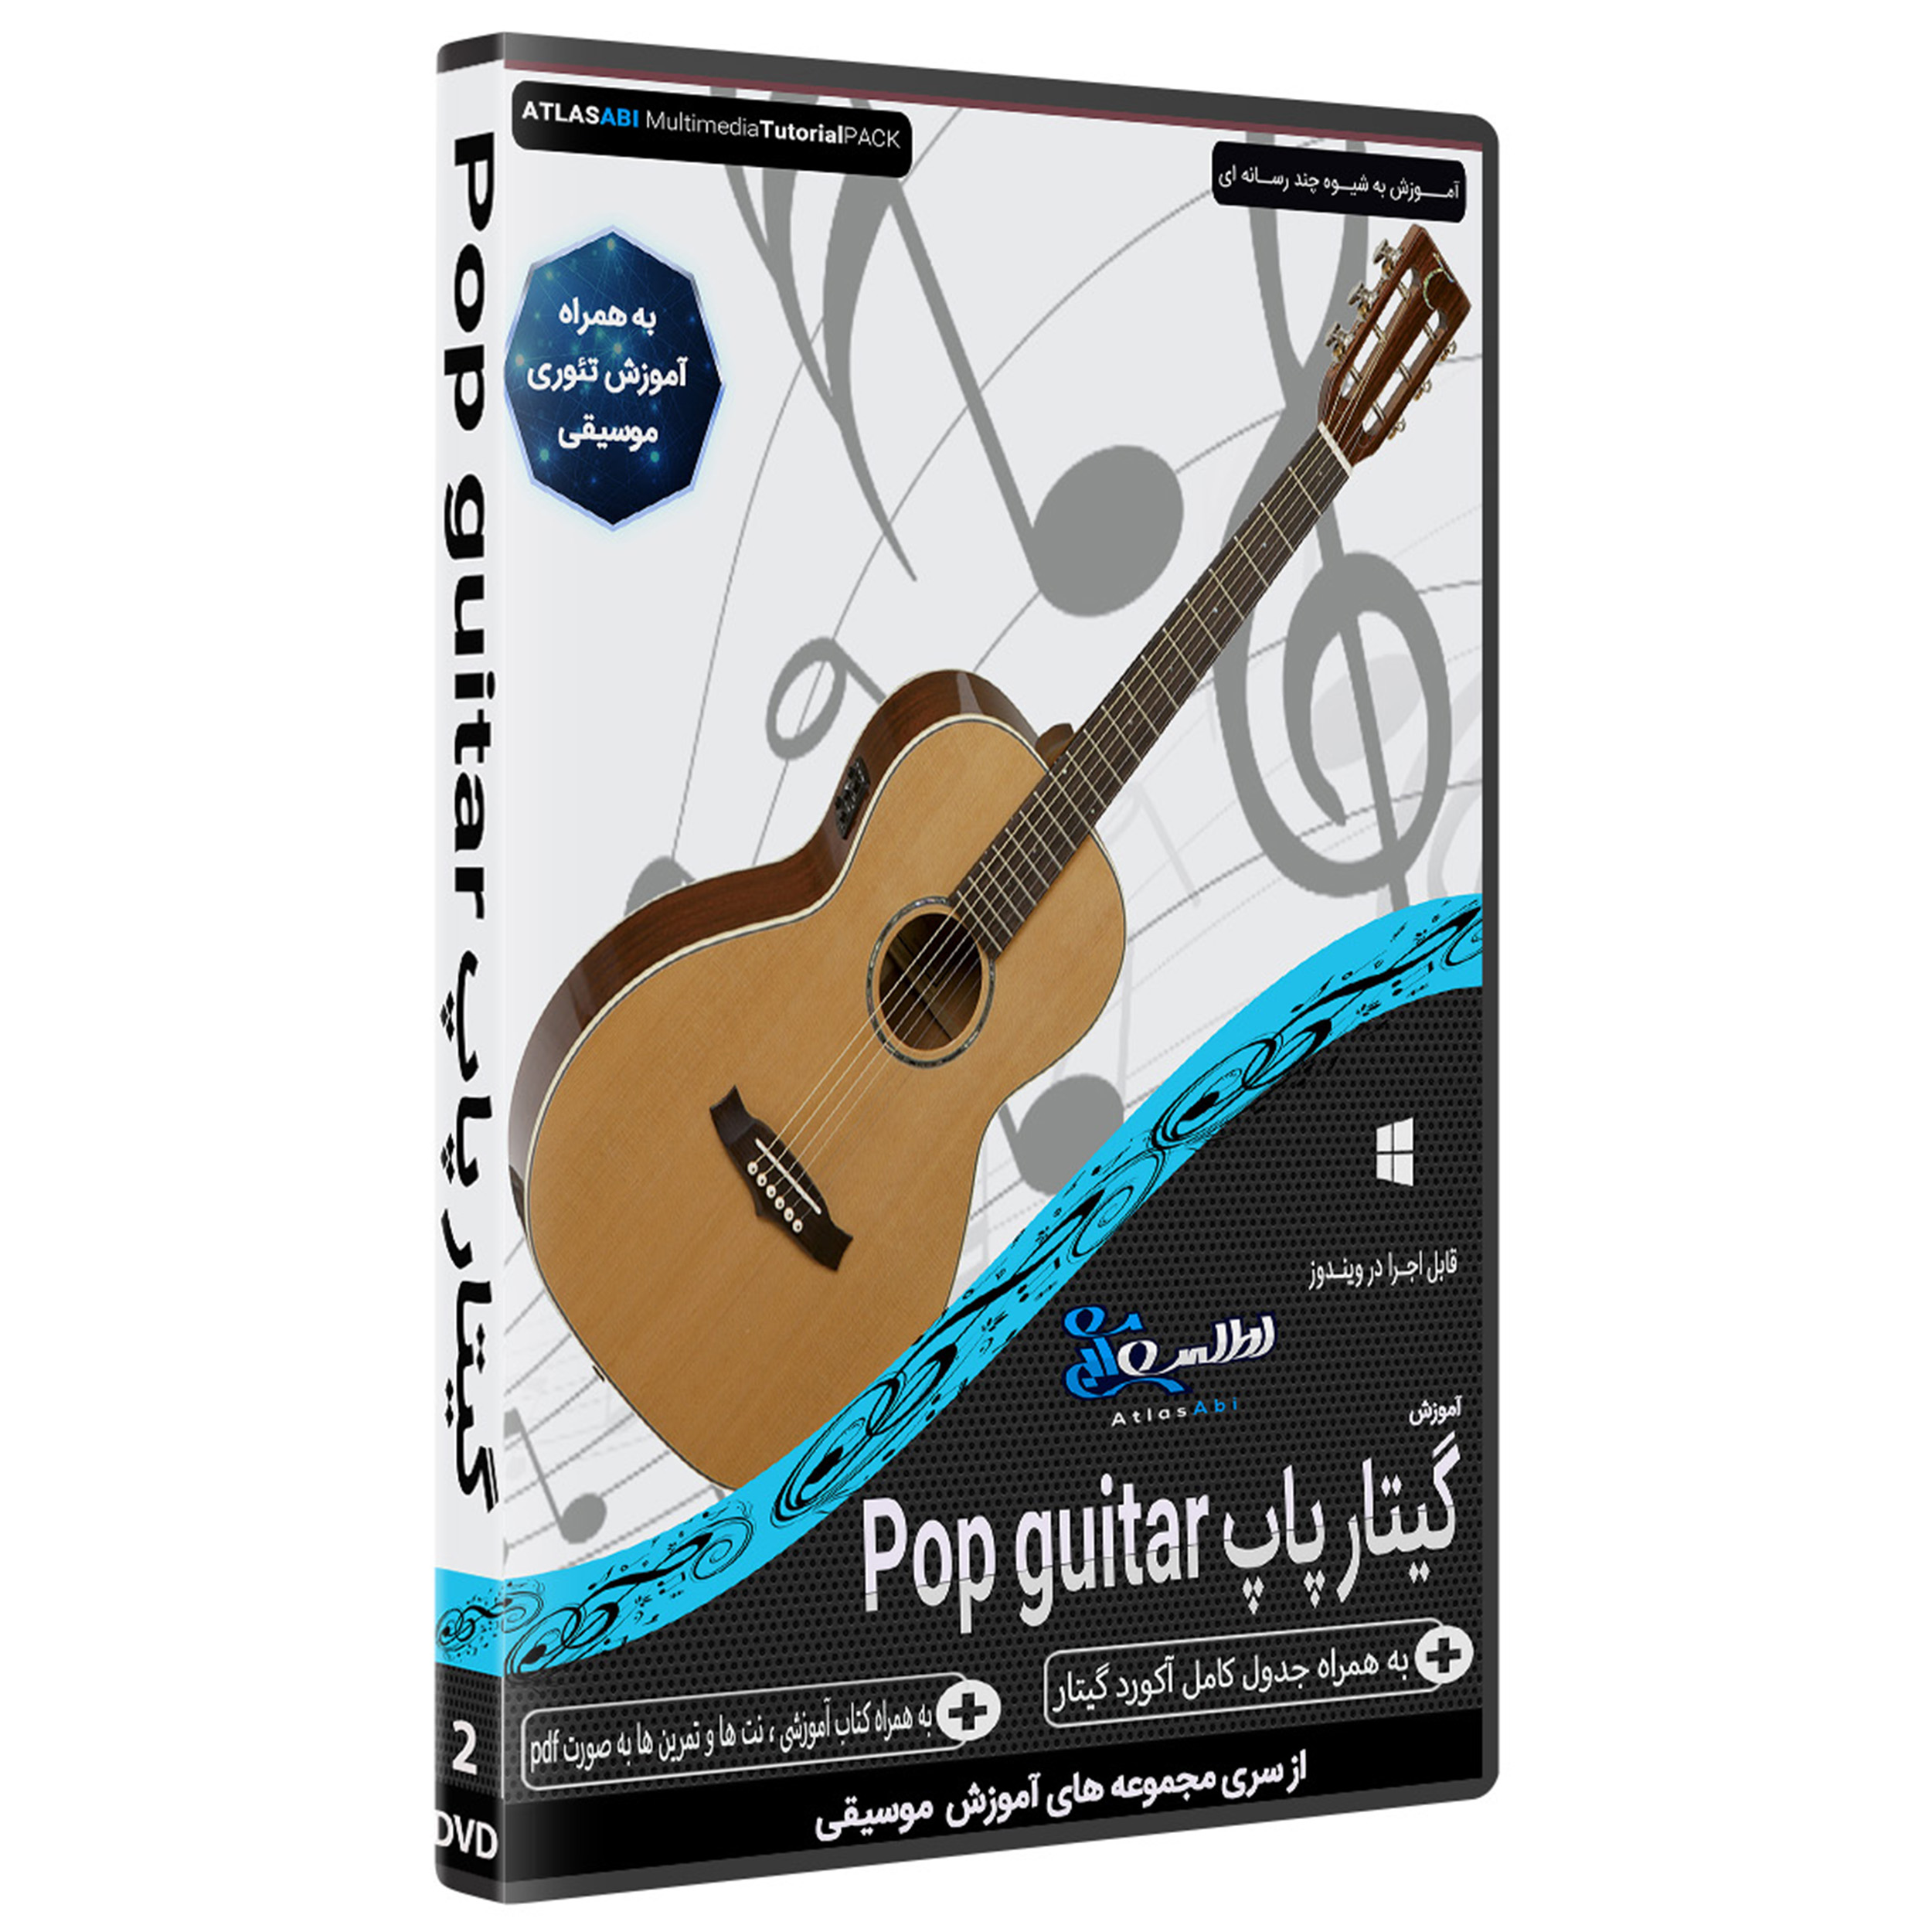 نرم افزار آموزش گیتار پاپ Pop guitar نشر اطلس آبی 